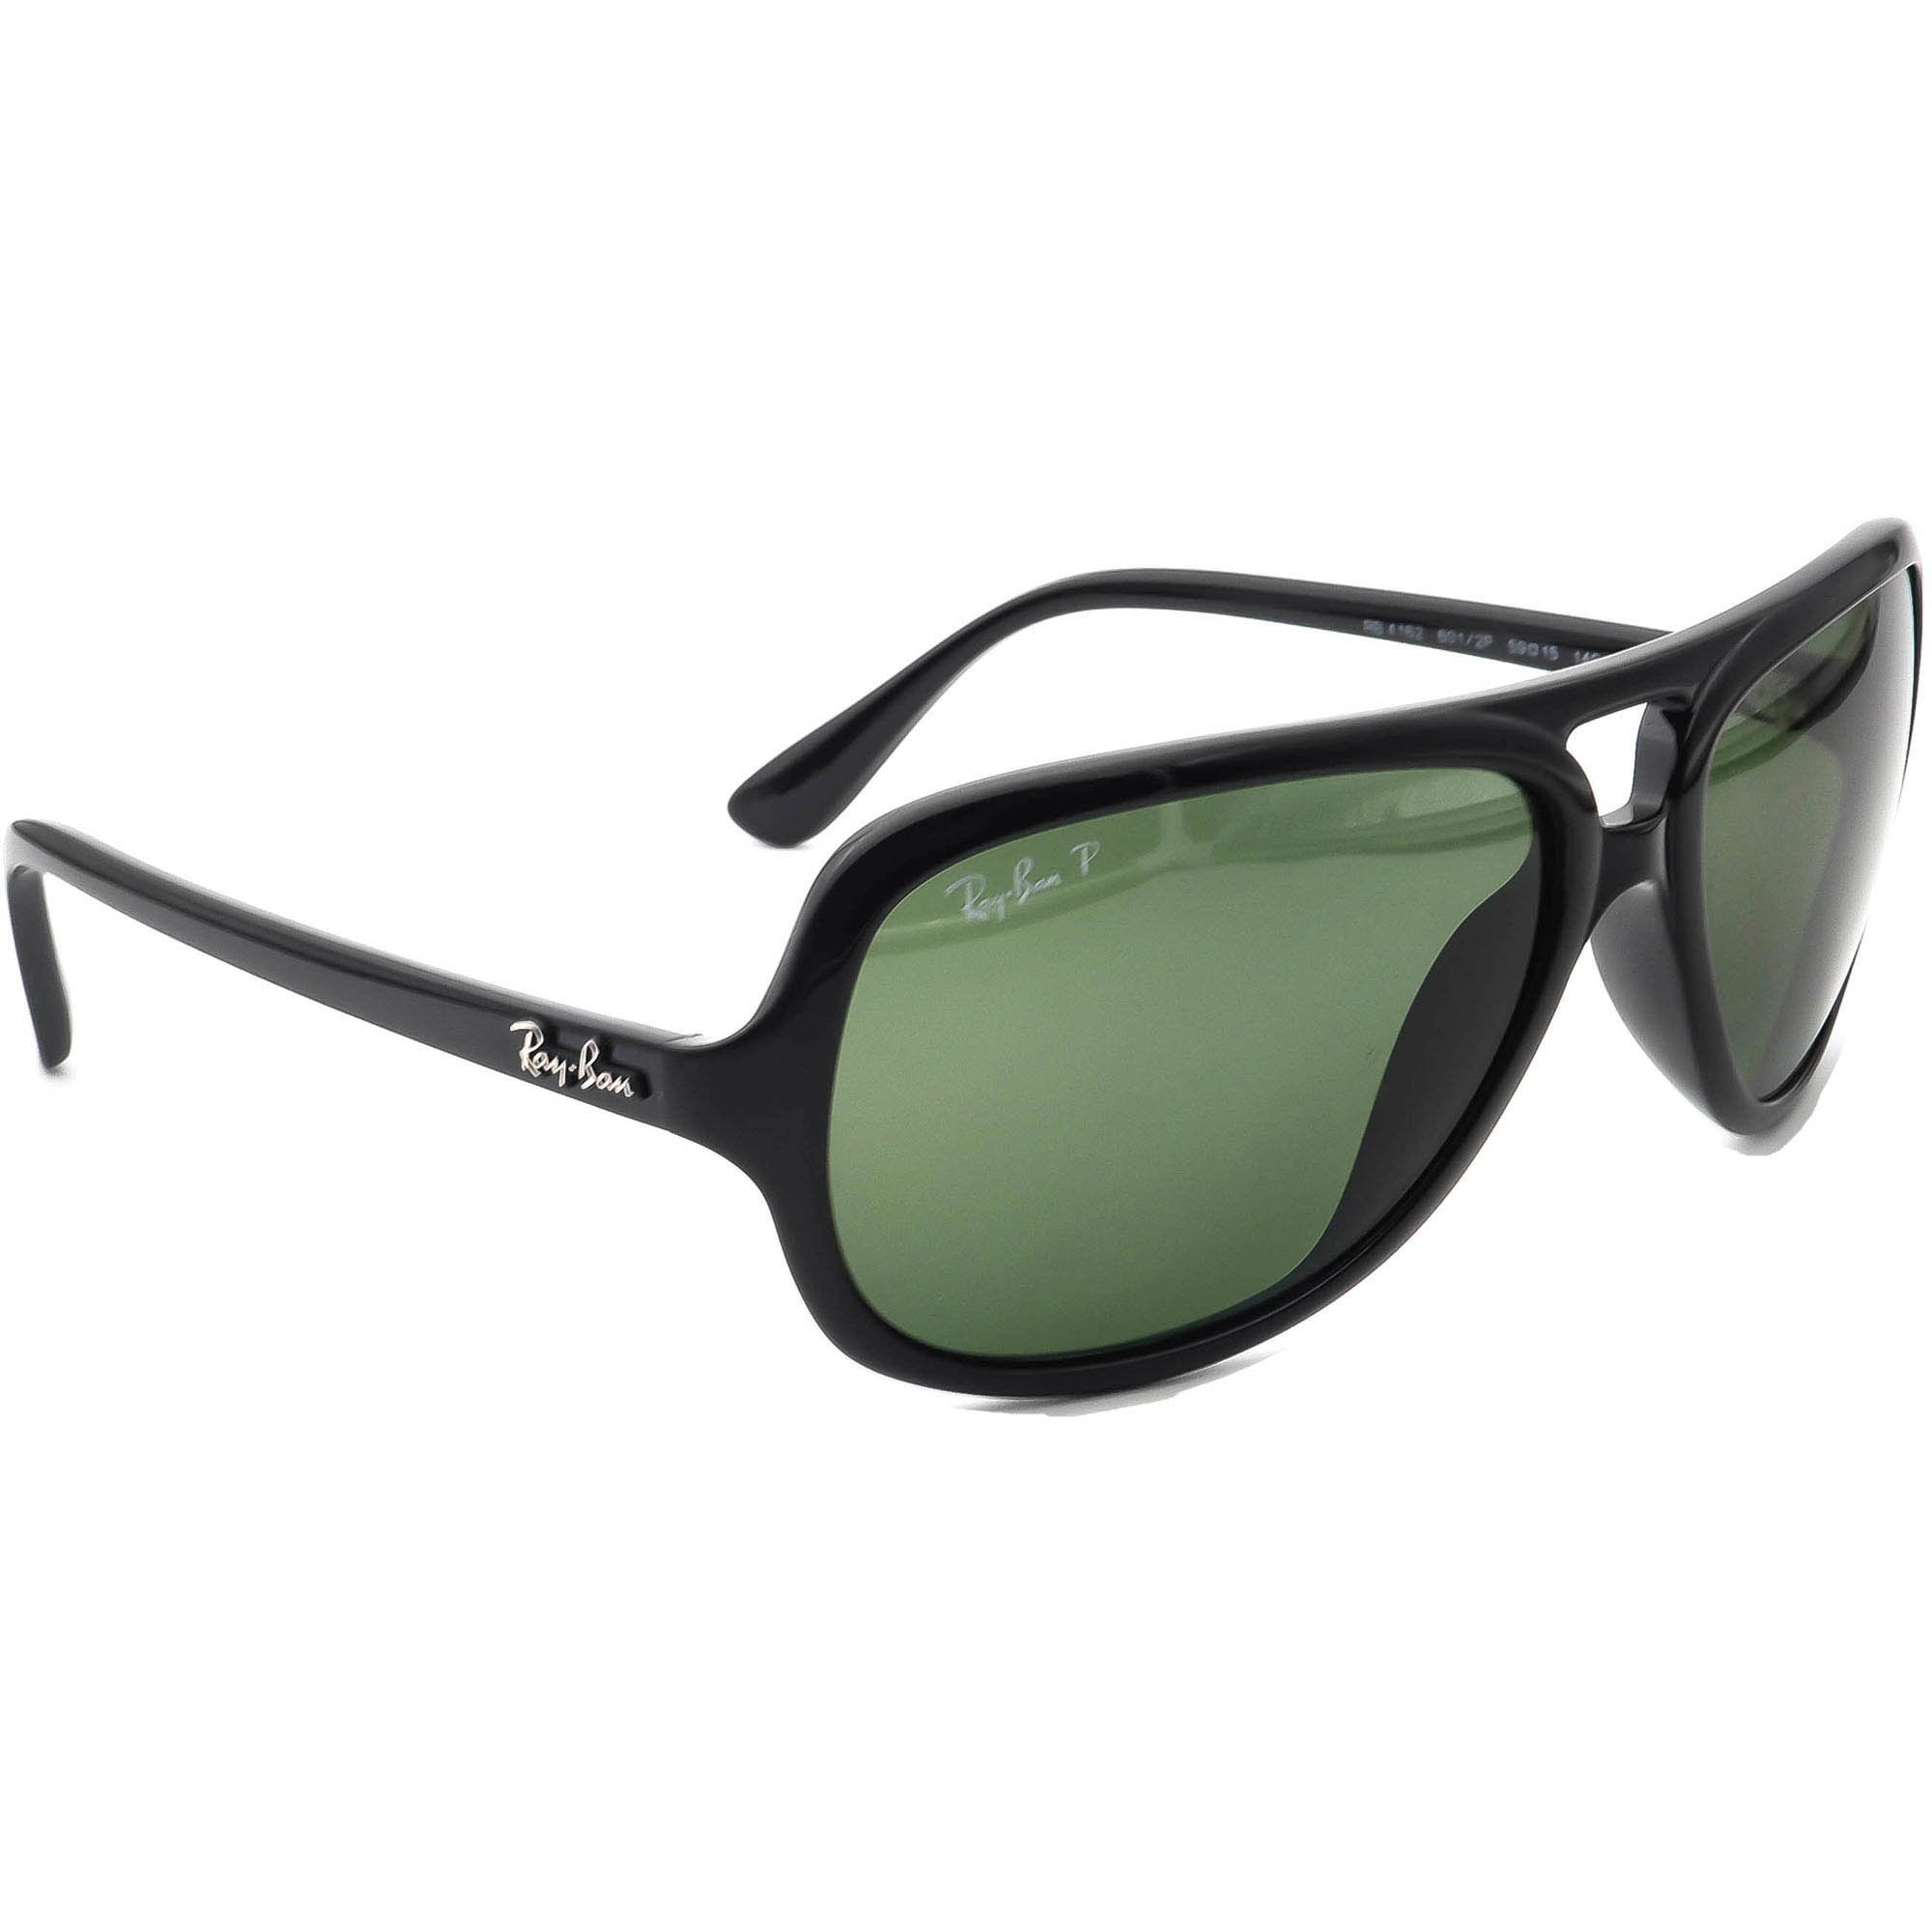 Ray-ban Polarized Sunglasses RB 4162 601/2P Black Aviator - Etsy